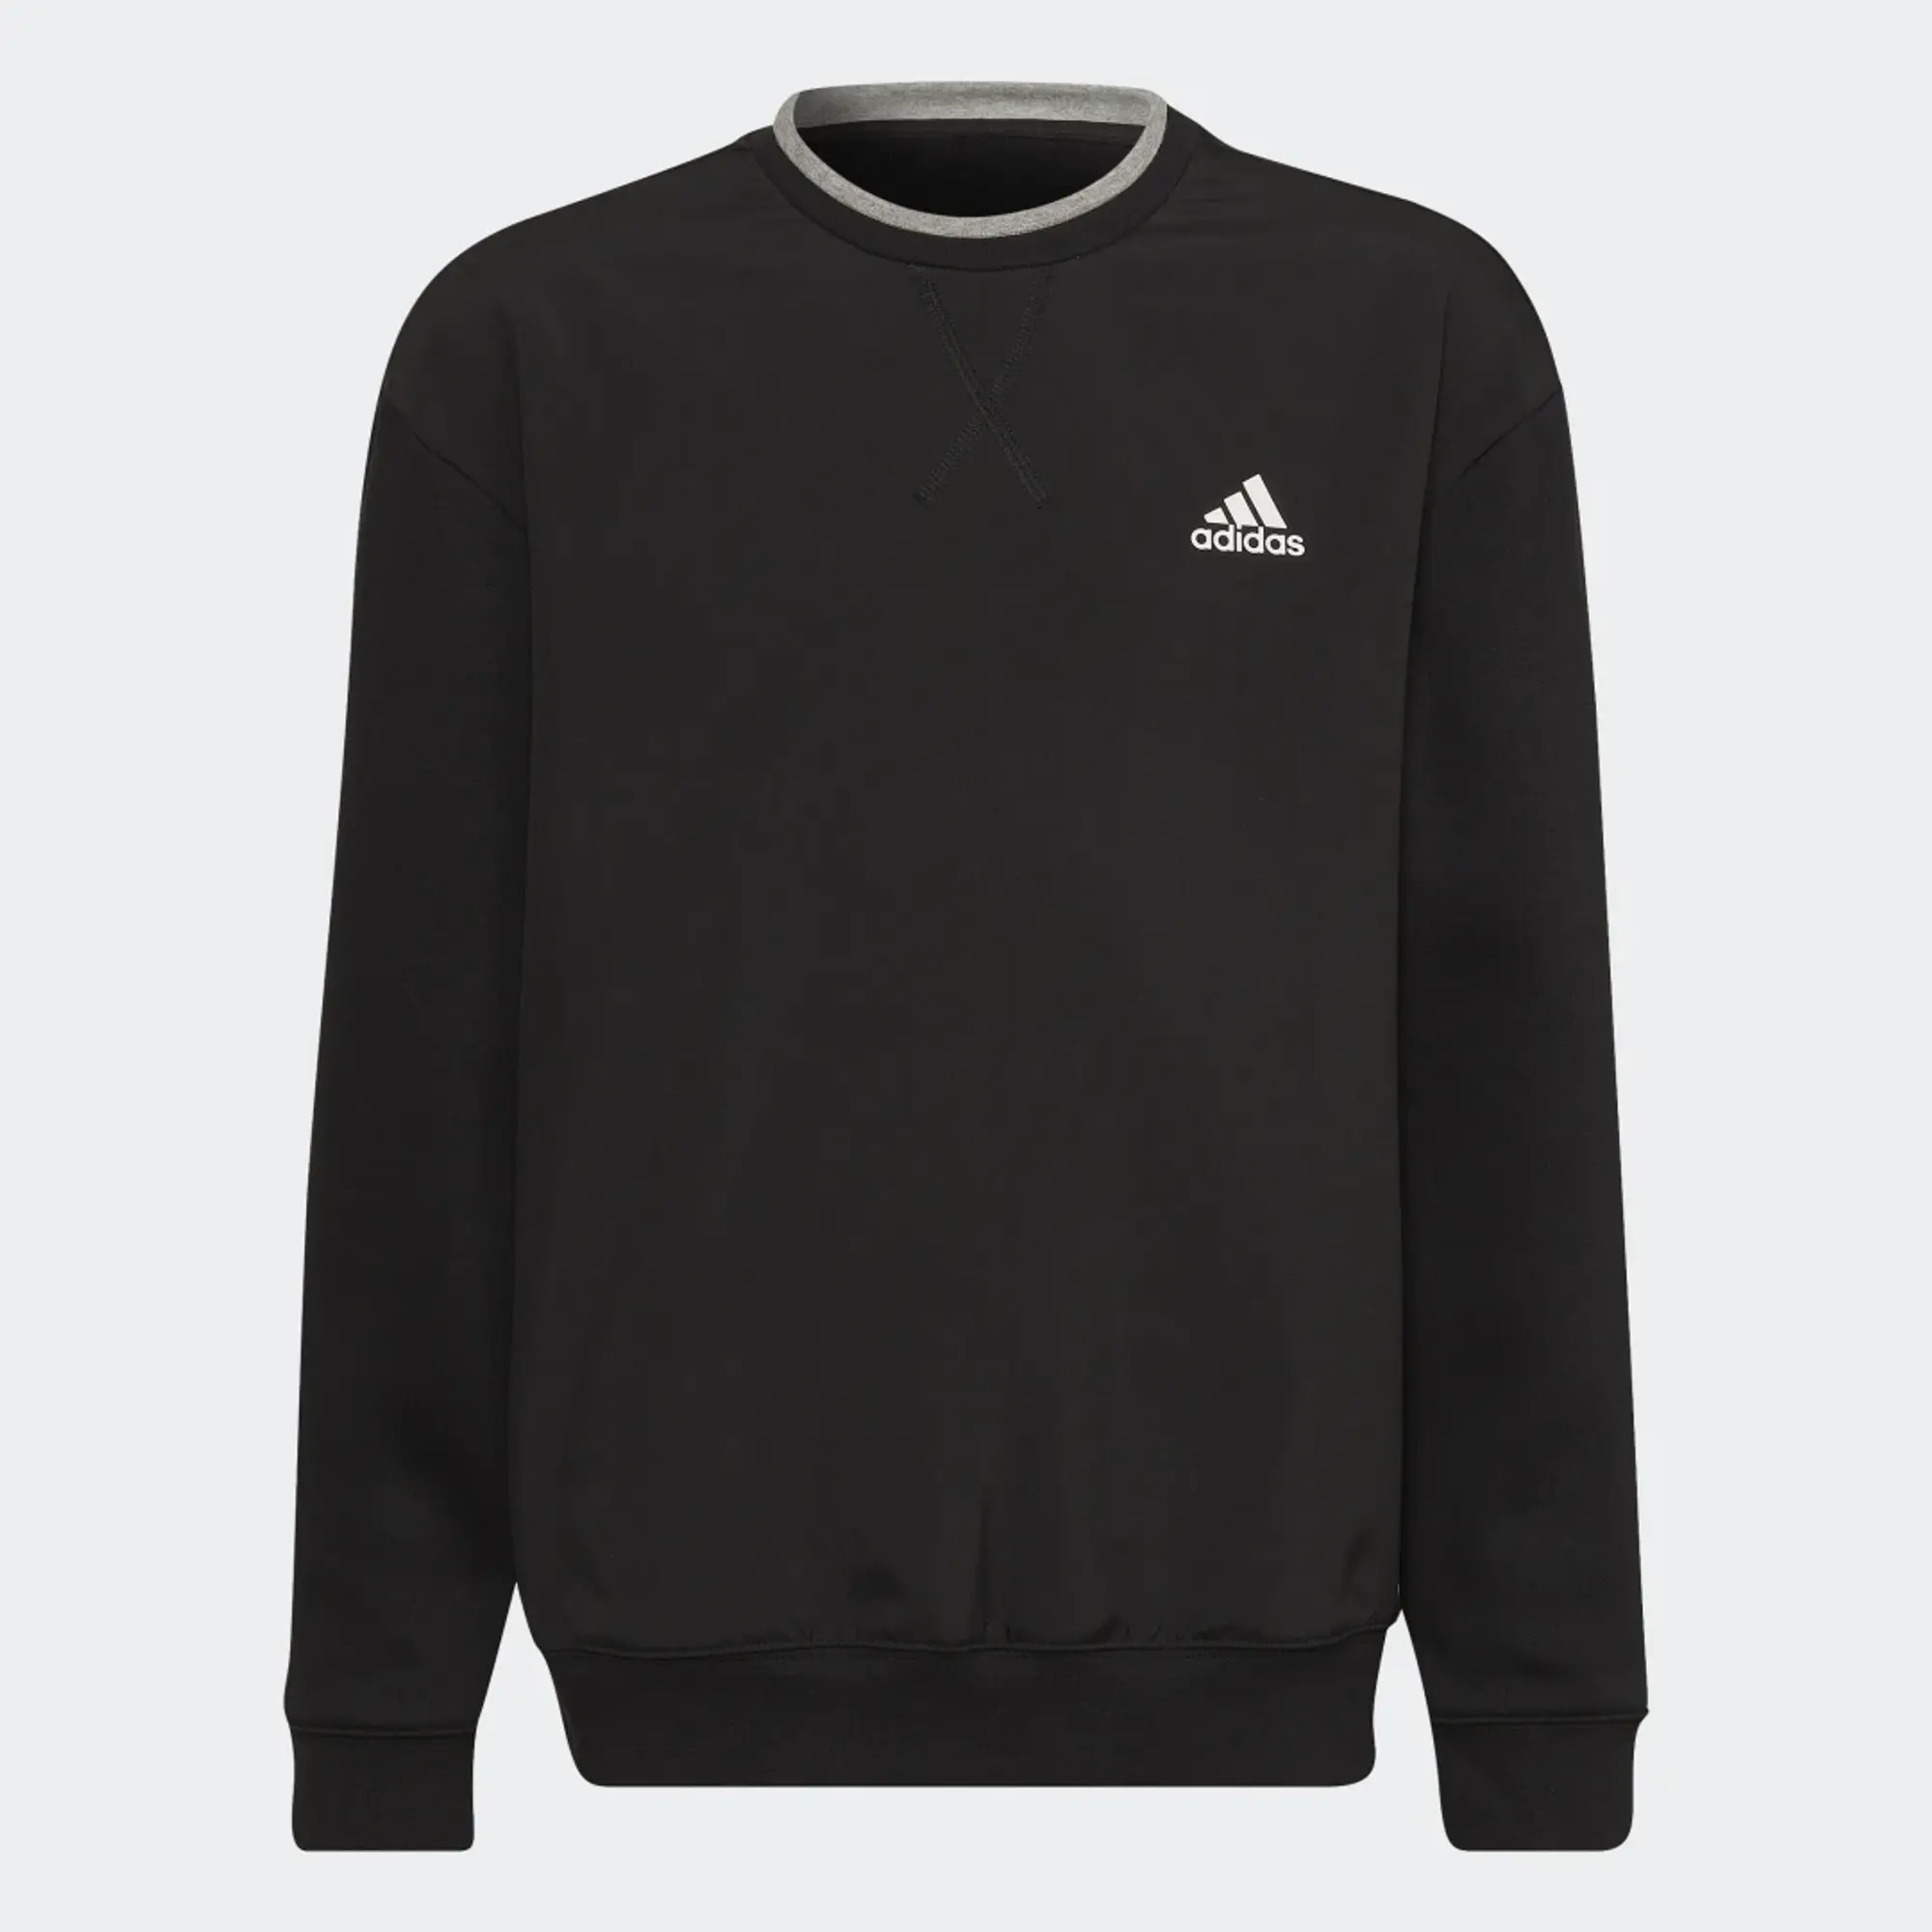 adidas All SZN Fleece Sweatshirt - Black / Medium Grey Heather